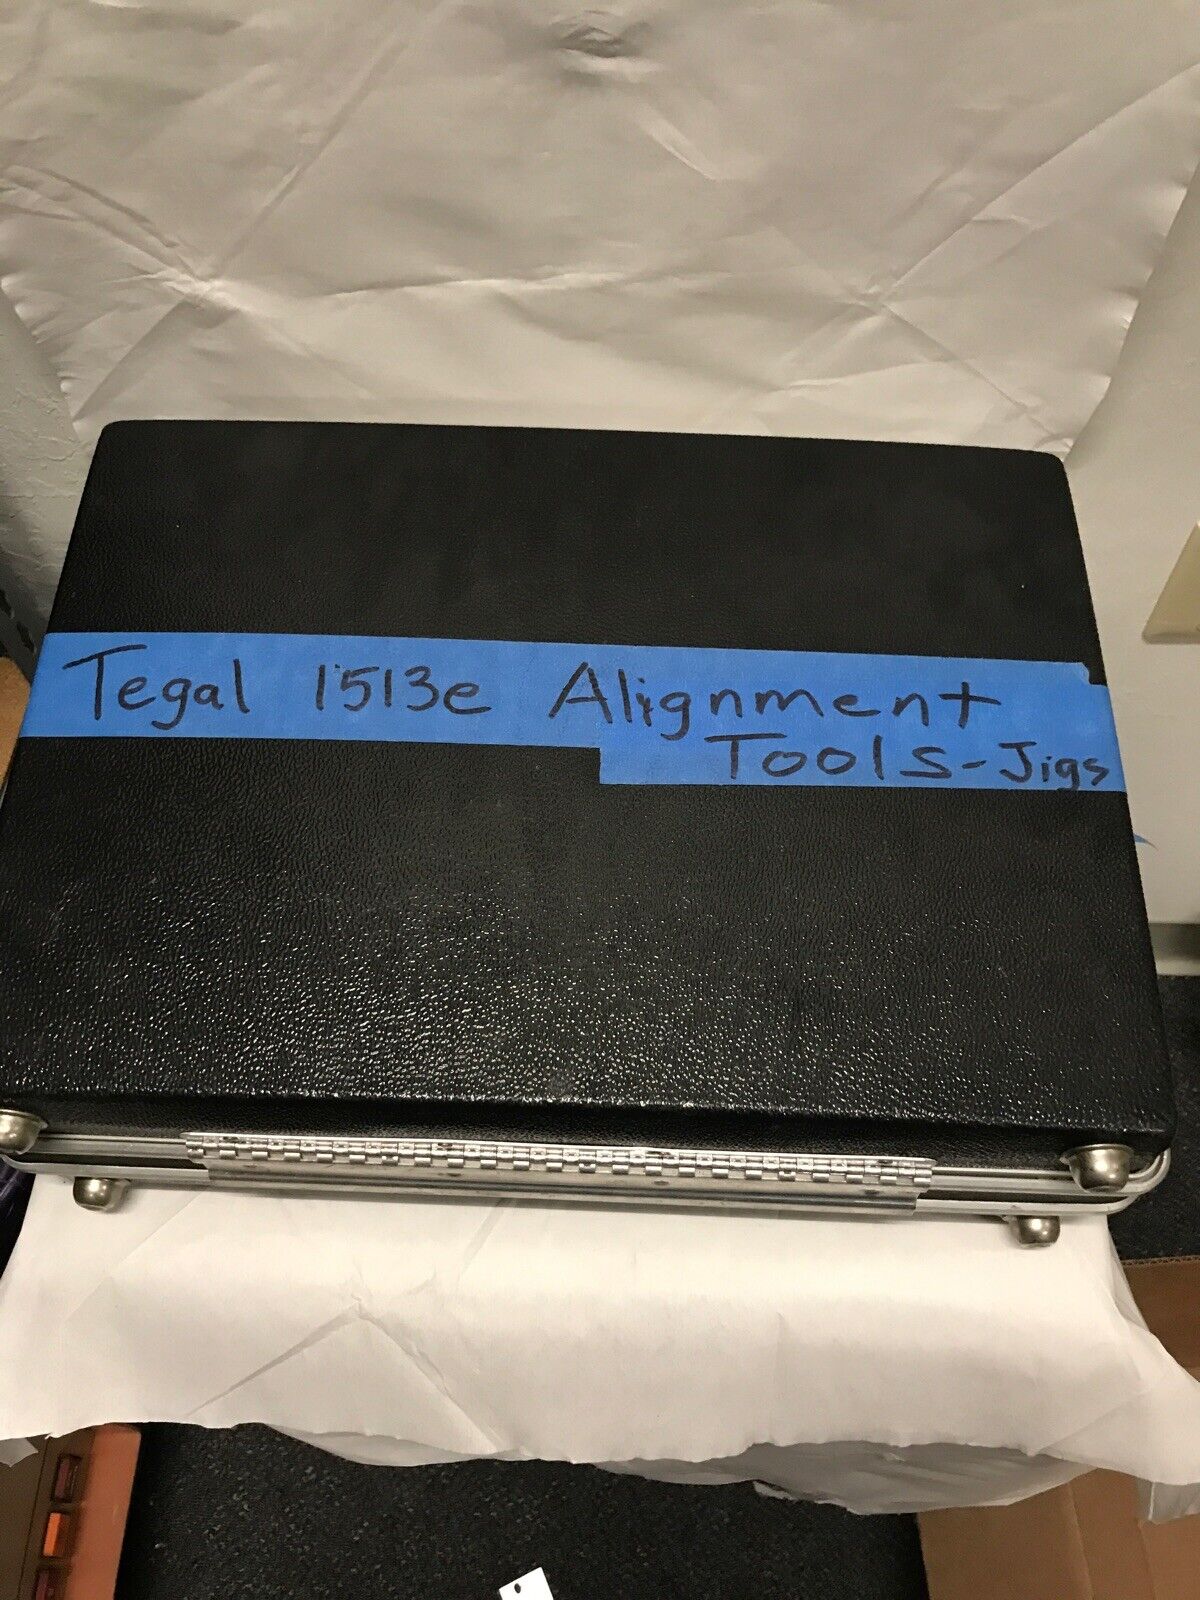 Tegal 1513e Aligment Tools-Jigs ID-AWS-010